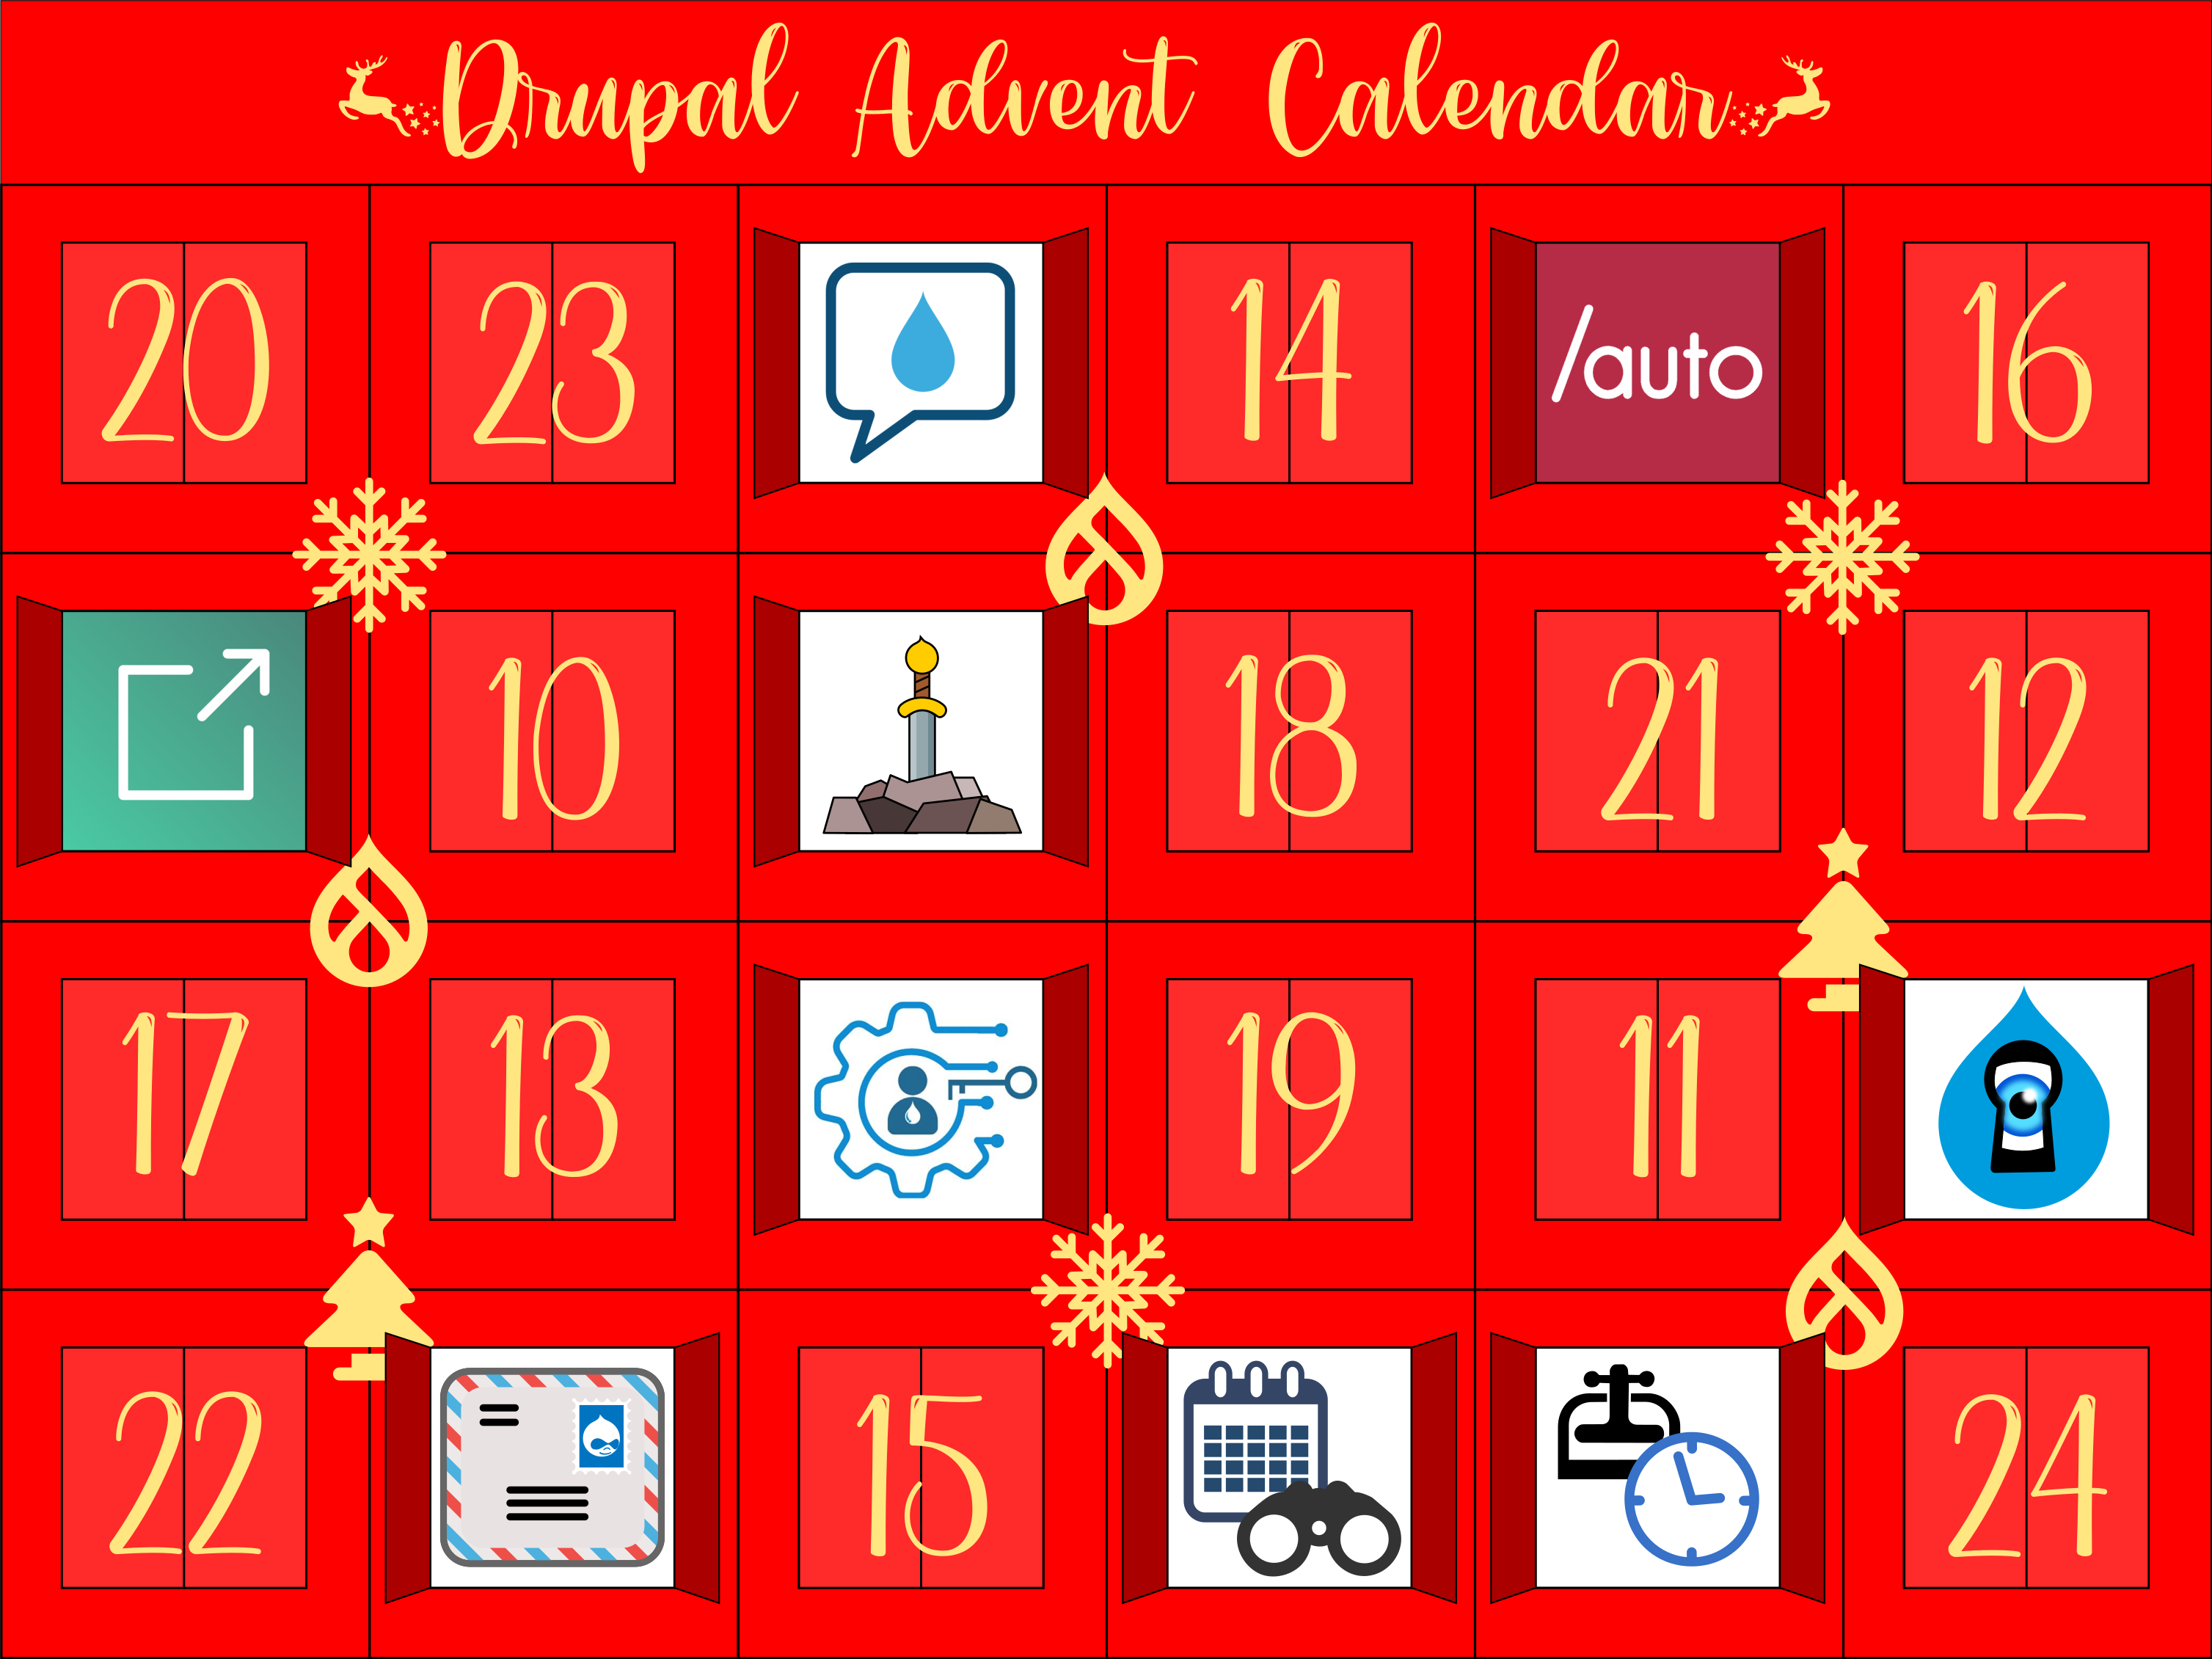 Advent Calendar with door 9 open revealing Scheduled Publish logo